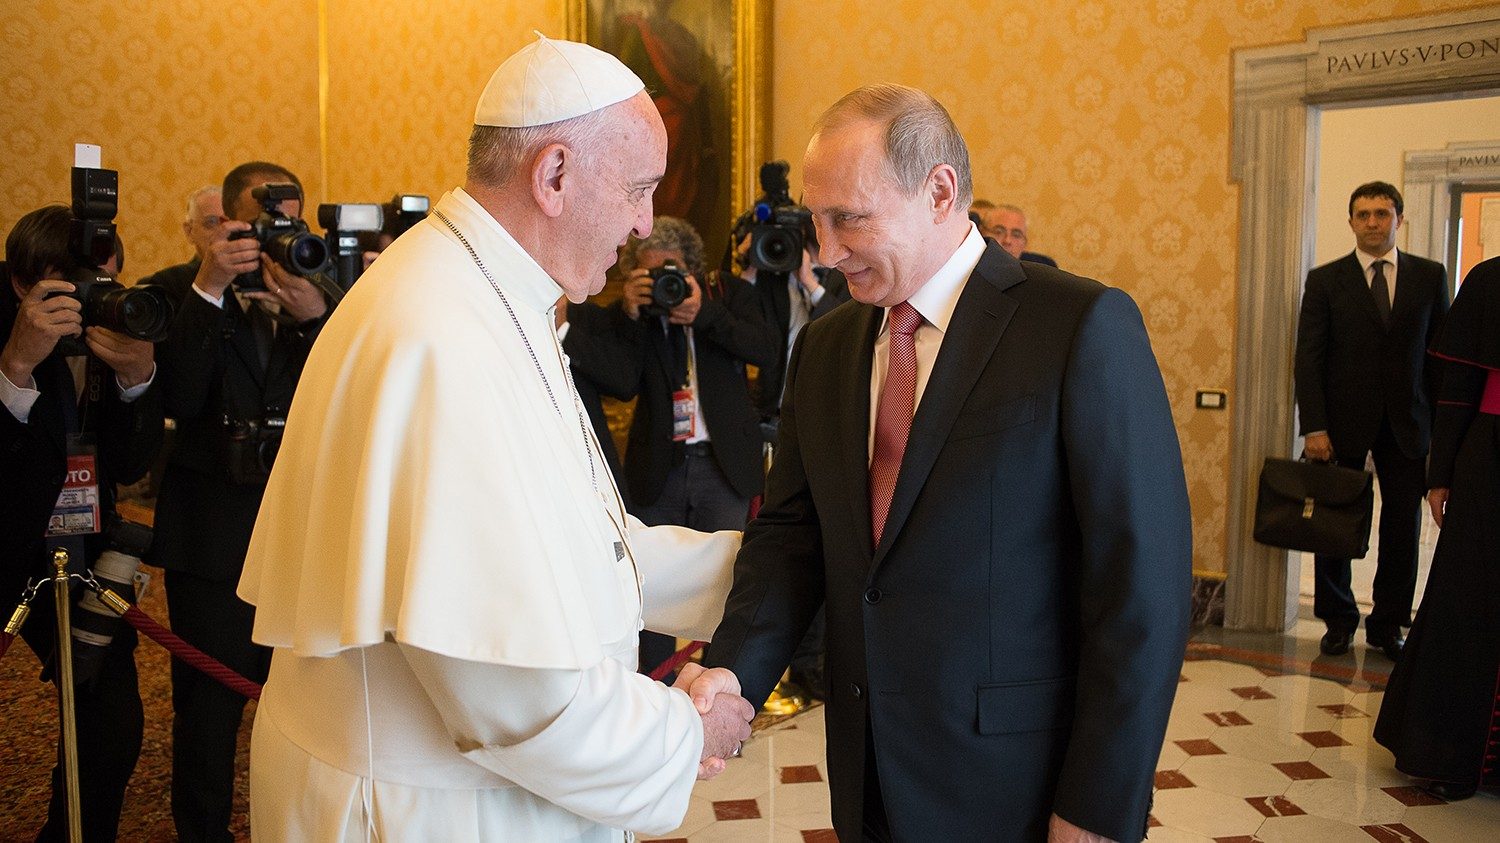 Vladimir Poutine de nouveau attendu au Vatican, le 4 juillet 2019 Cq5dam.thumbnail.cropped.1500.844